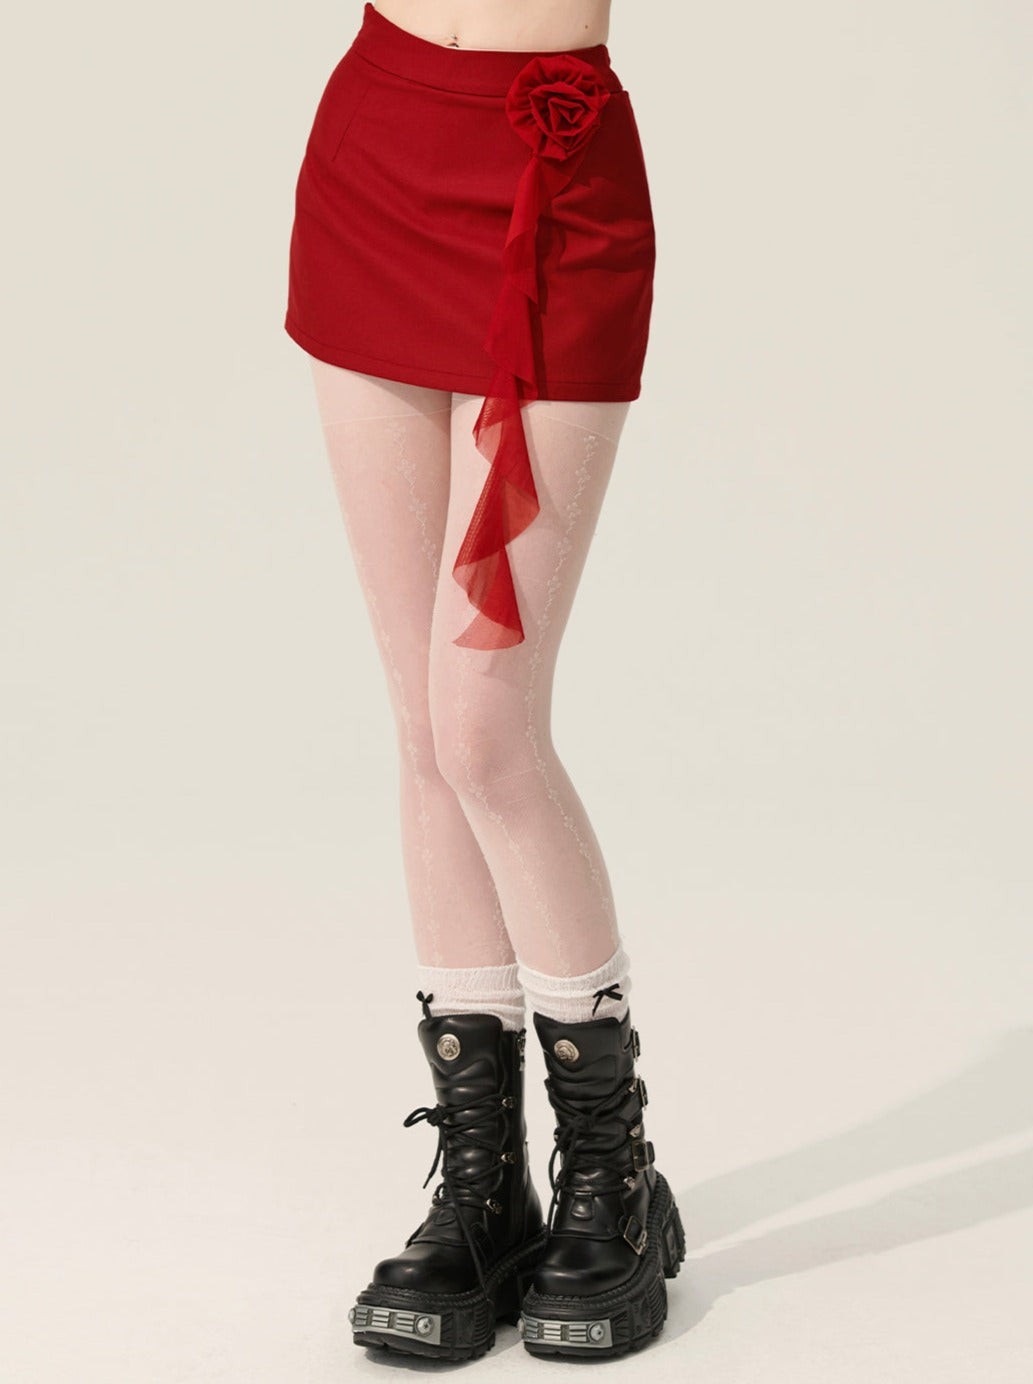 [En vente à partir du 31 mai à 20 heures] Less eyes porte une jupe rouge modèle avec une jupe au design moulant.